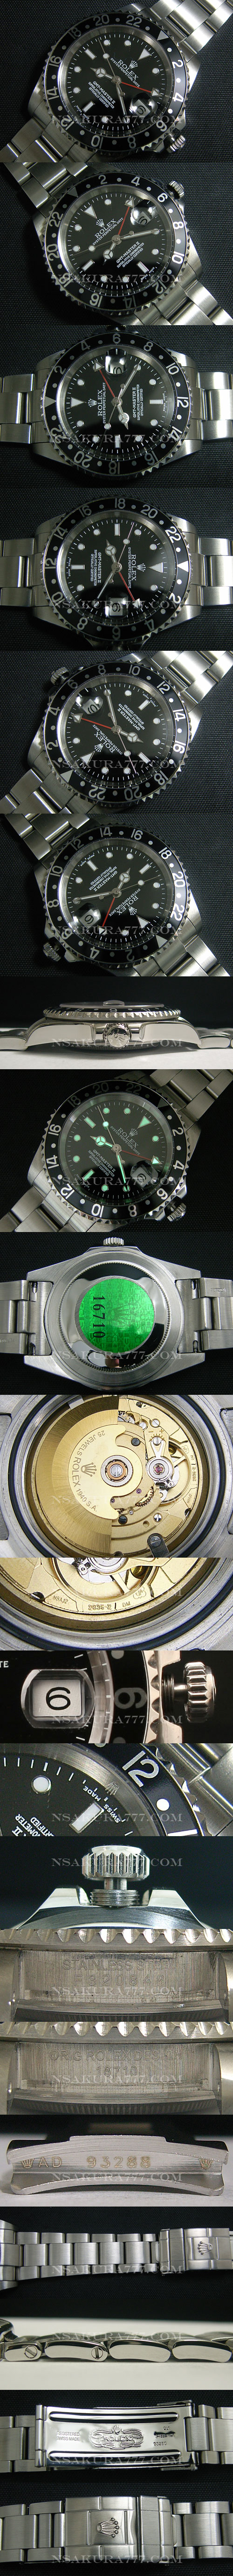 レプリカ時計スーパーコピー時計ロレックス GMT短針単独稼動調整可2836搭載 - ウインドウを閉じる